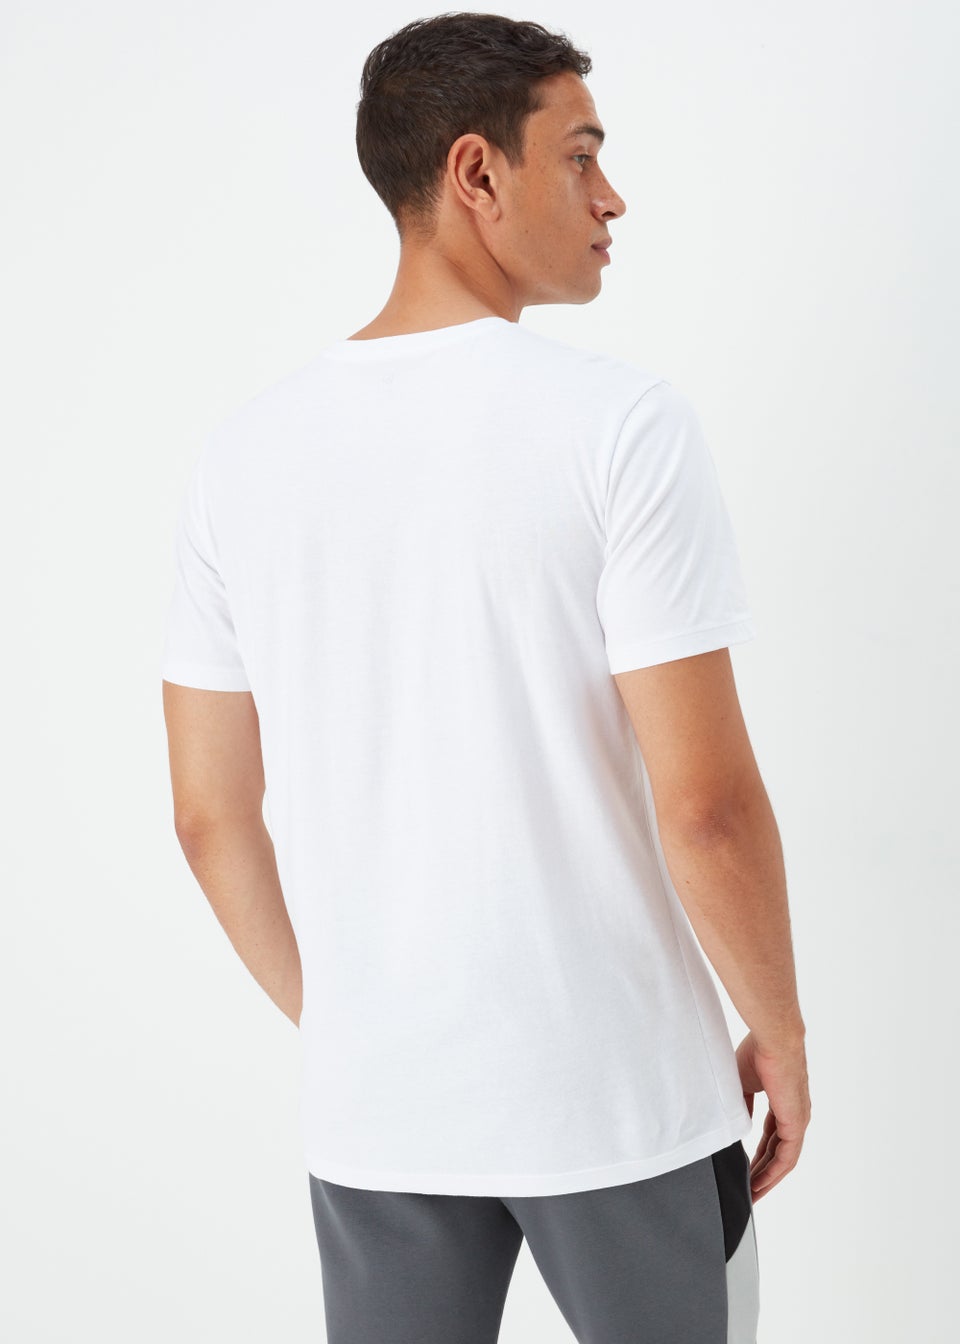 US Athletic White Foil T-Shirt